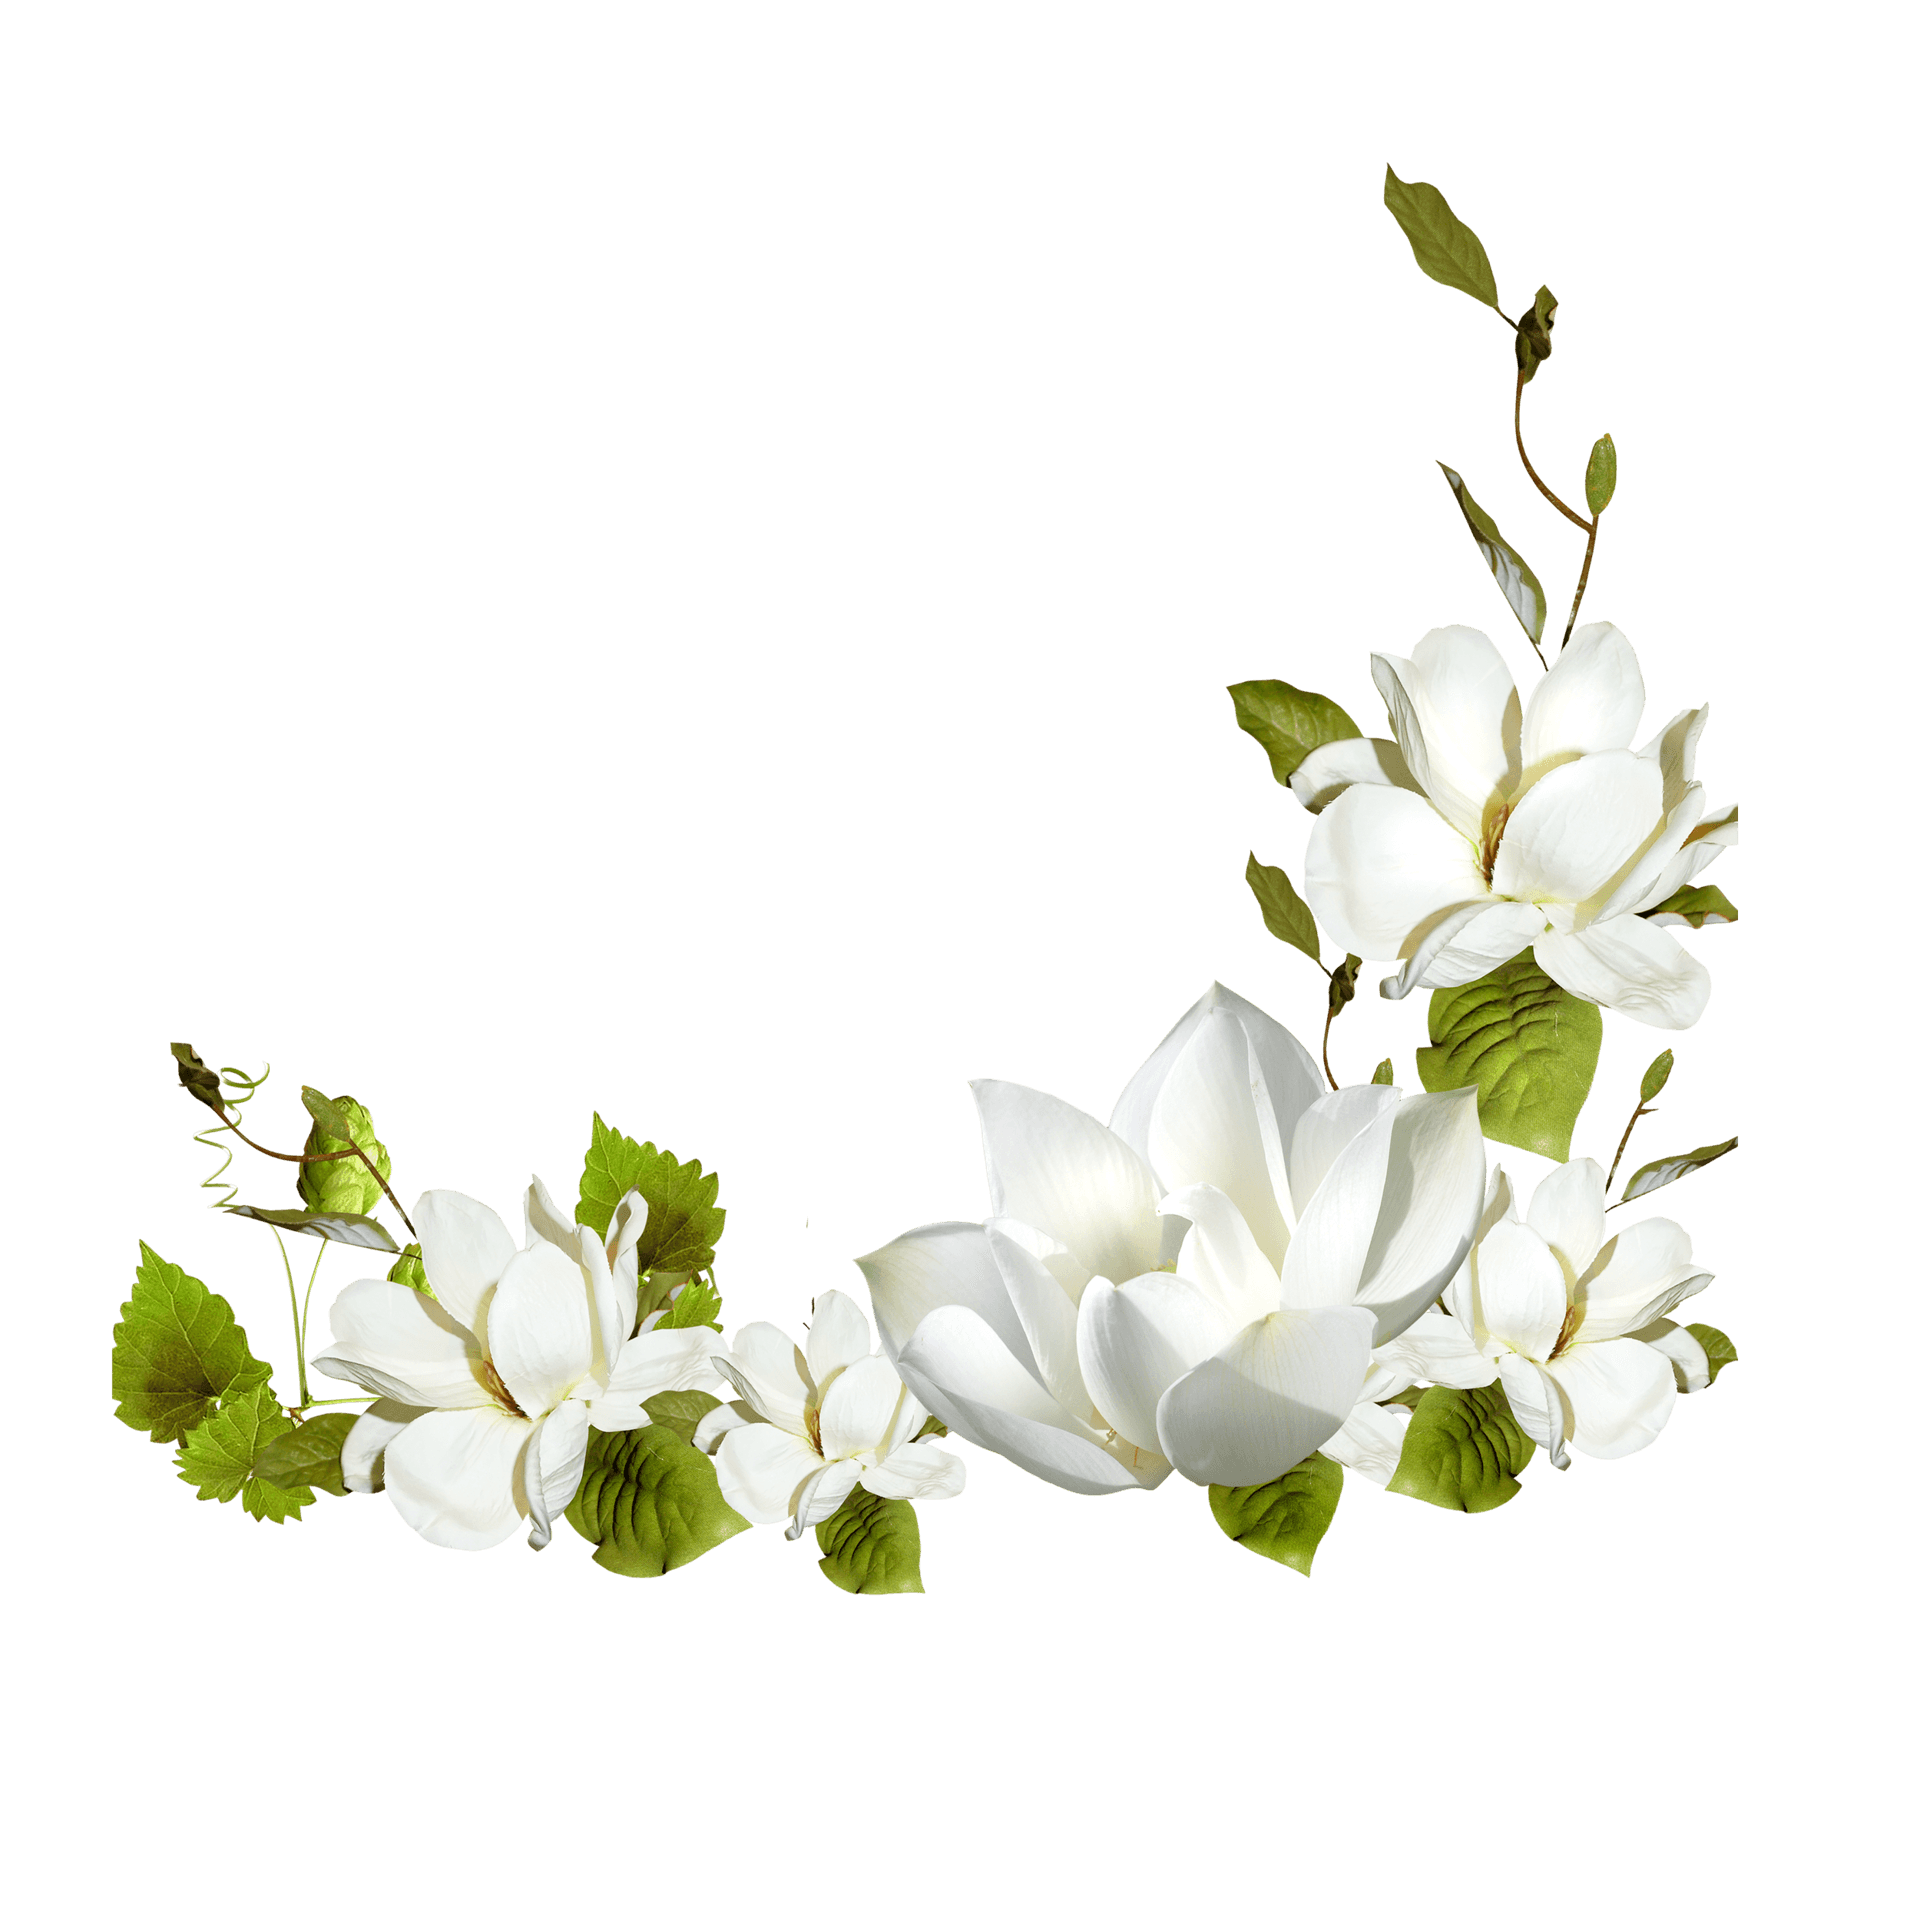 Eineblühende Weiße Blume Inmitten Einer Üppigen Frühlingslandschaft.